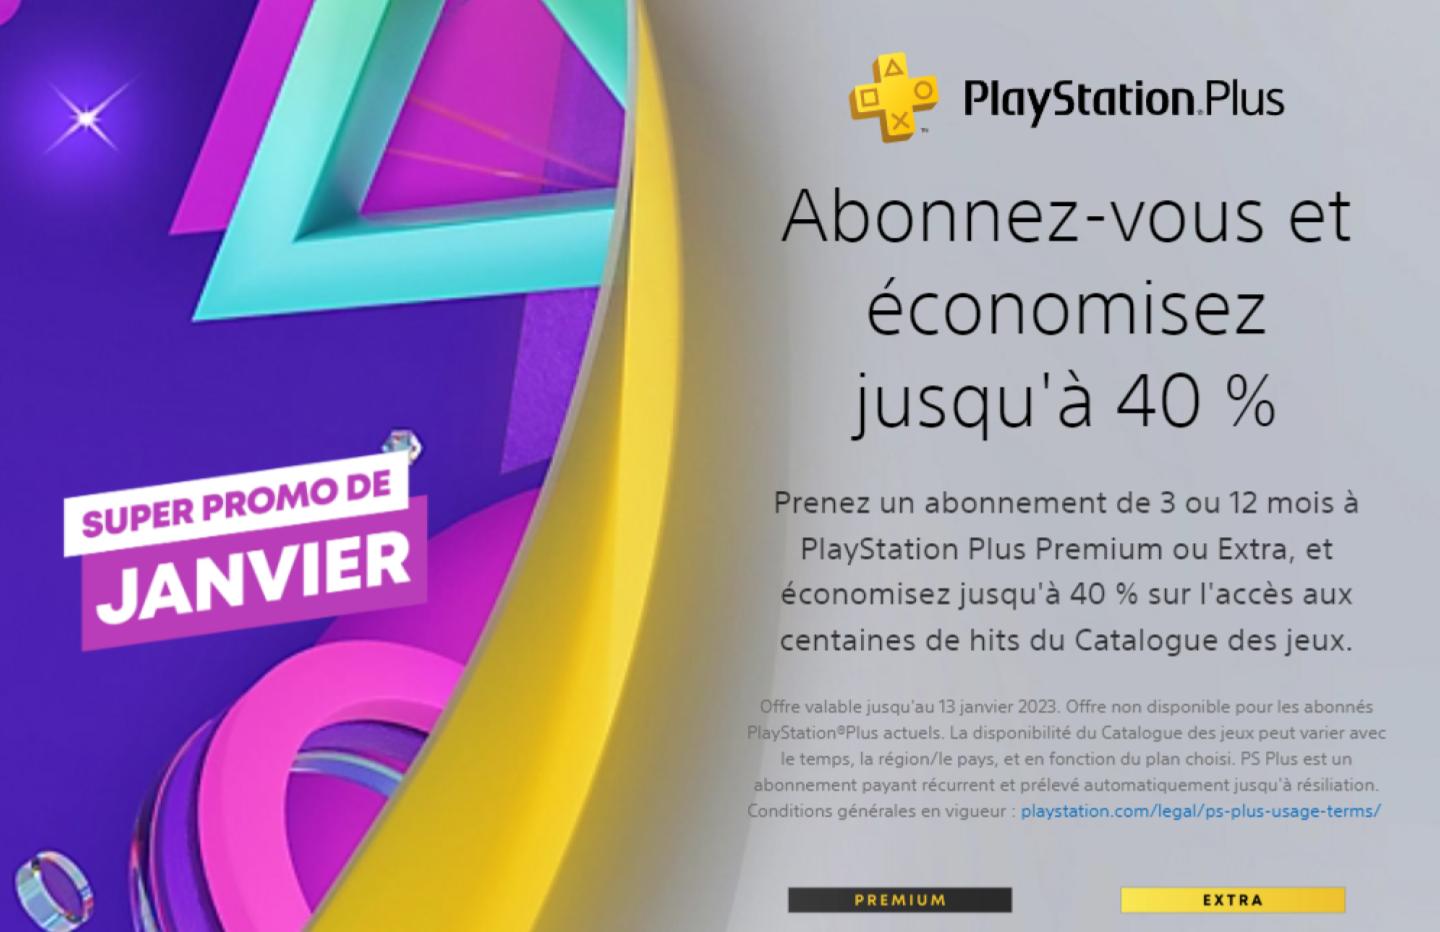 Hypergames Auchan on X: L'abonnement 12 mois PlayStation Plus est à 44,99€  au lieu de 59,99€ jusqu'au 13 janvier.  / X